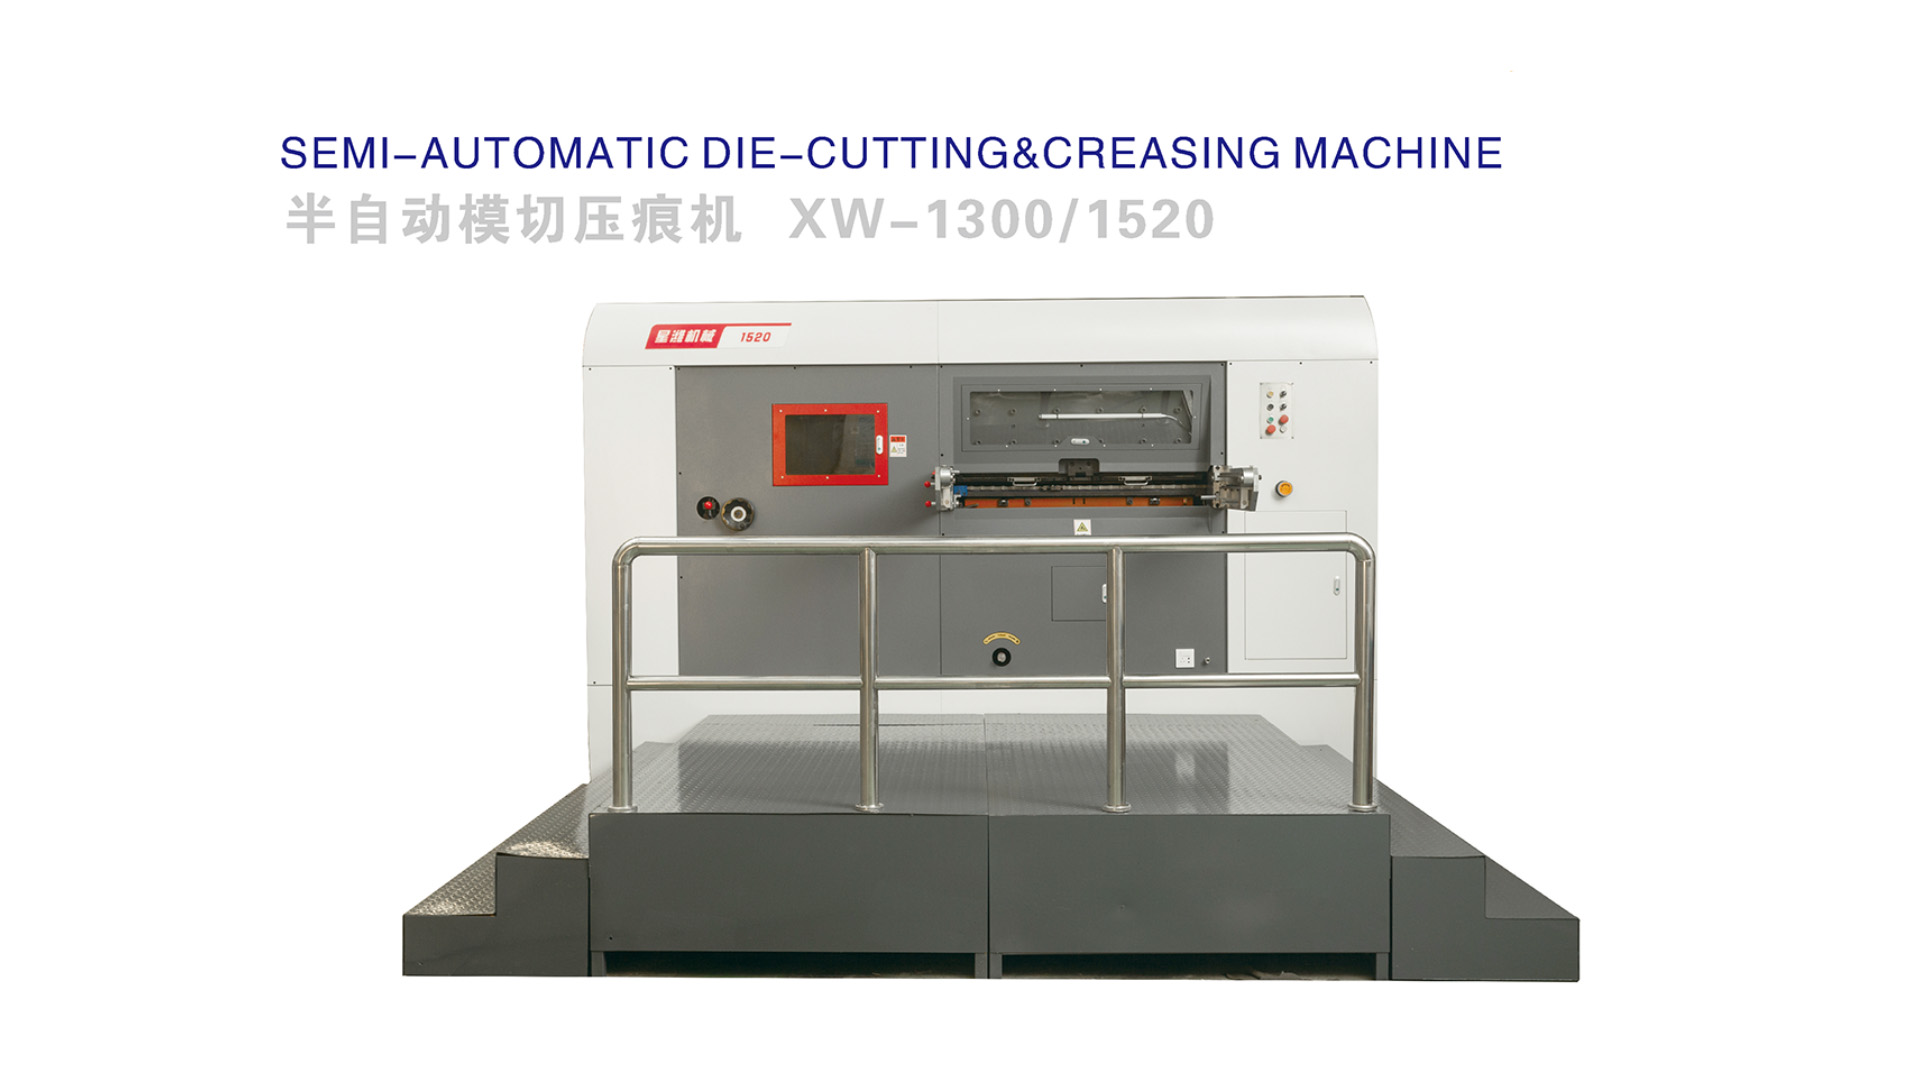 Semi-automatic die-cutting & creasing machine